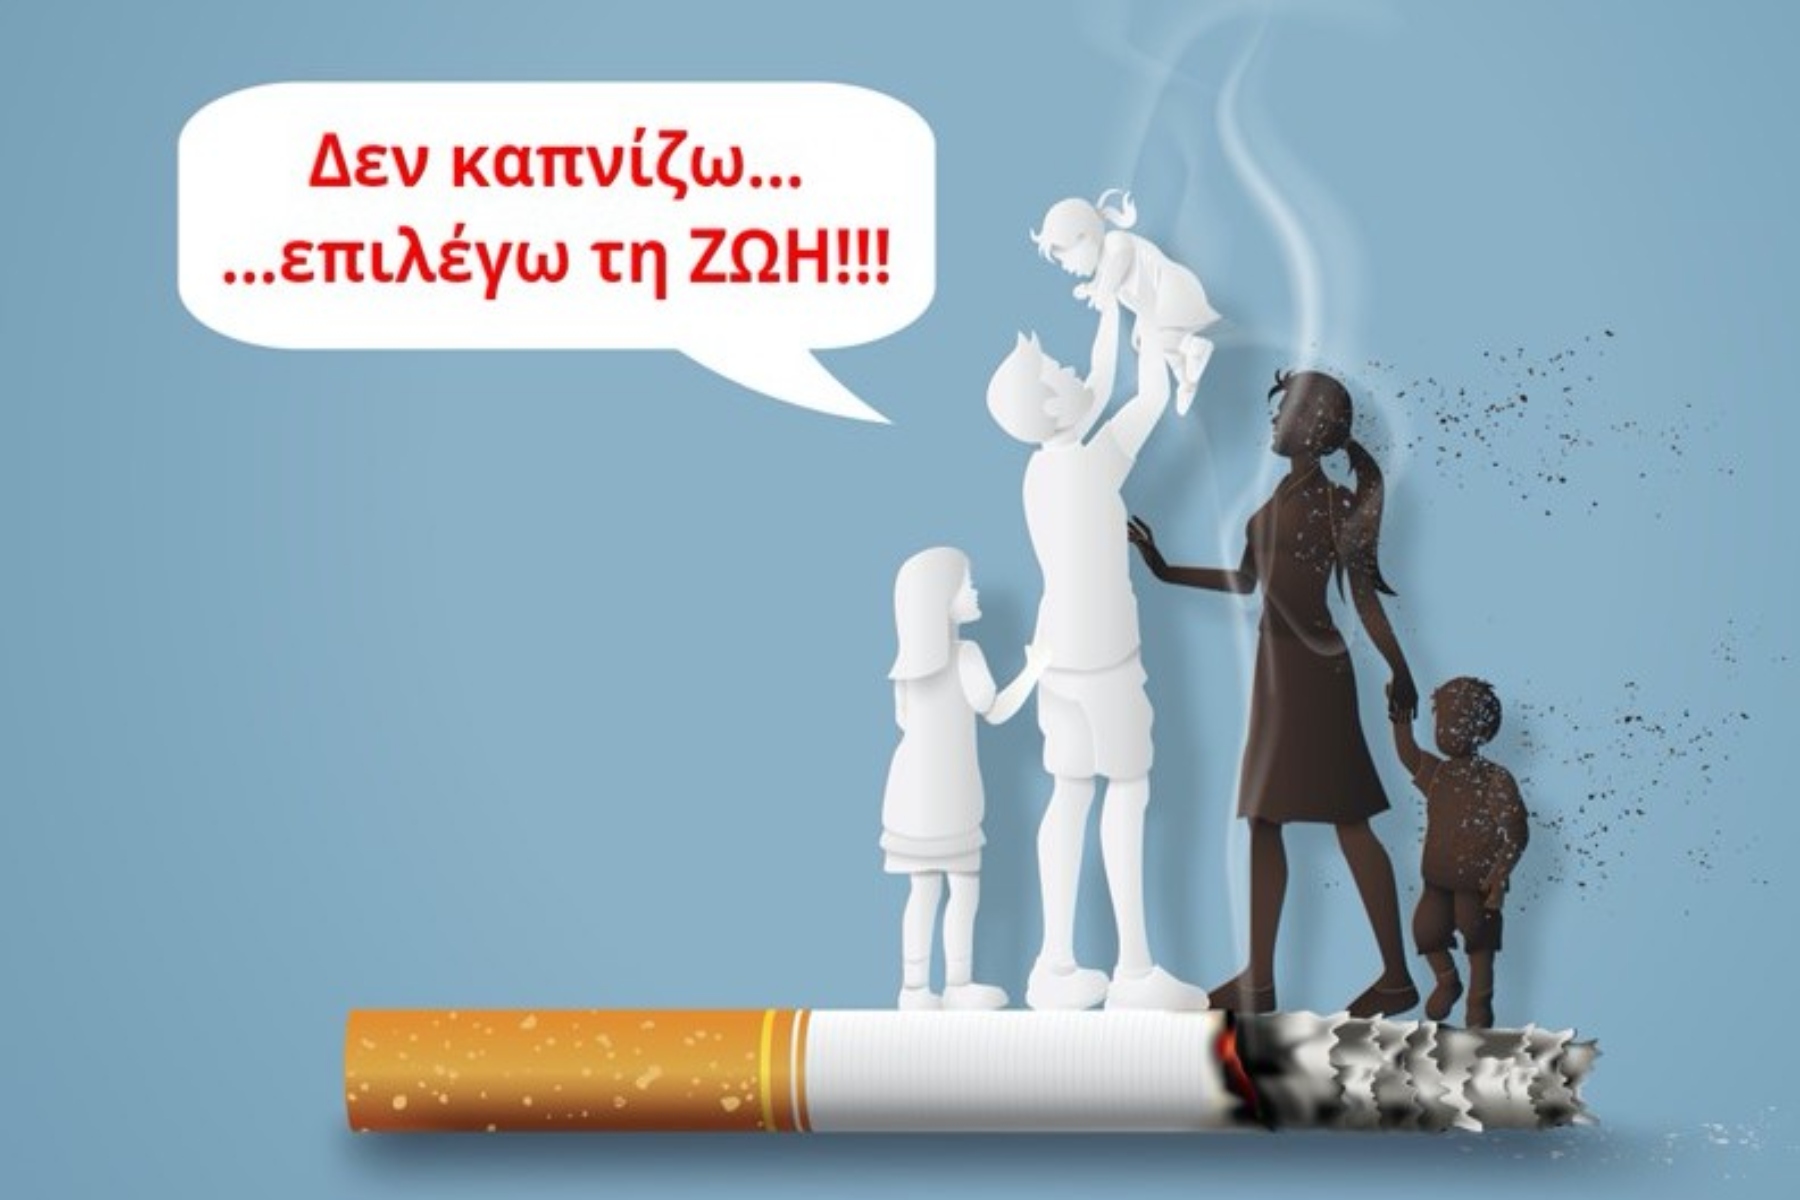 ΚΕΦΙ: Ημερίδα “Δεν καπνίζω .. επιλέγω την ζωή” στις 30 Μαΐου